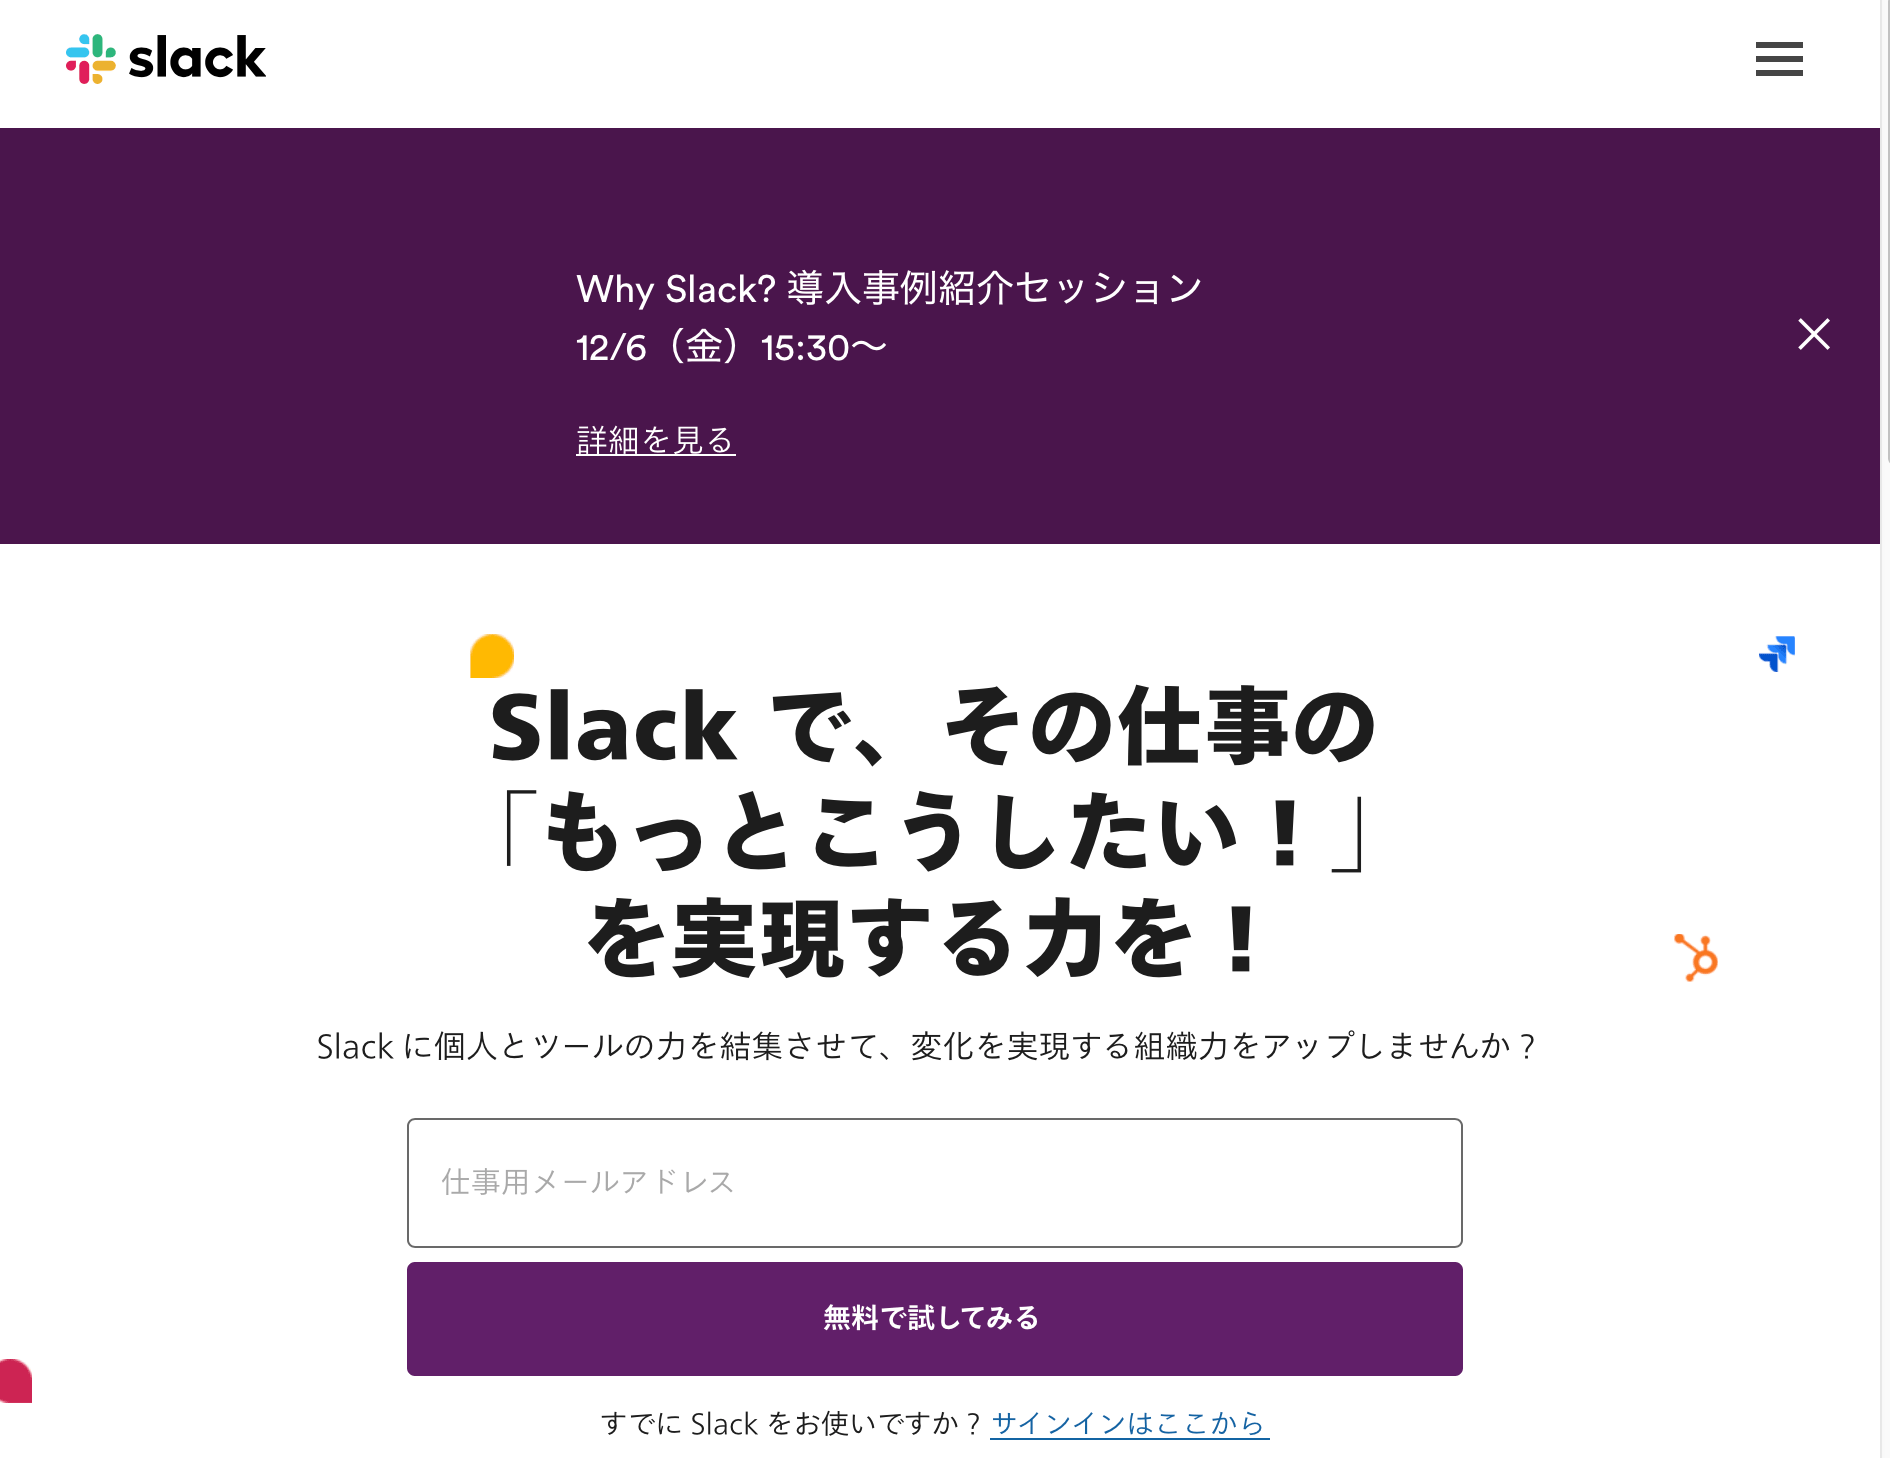 ひとり"Slack（スラック）"をデビューしました